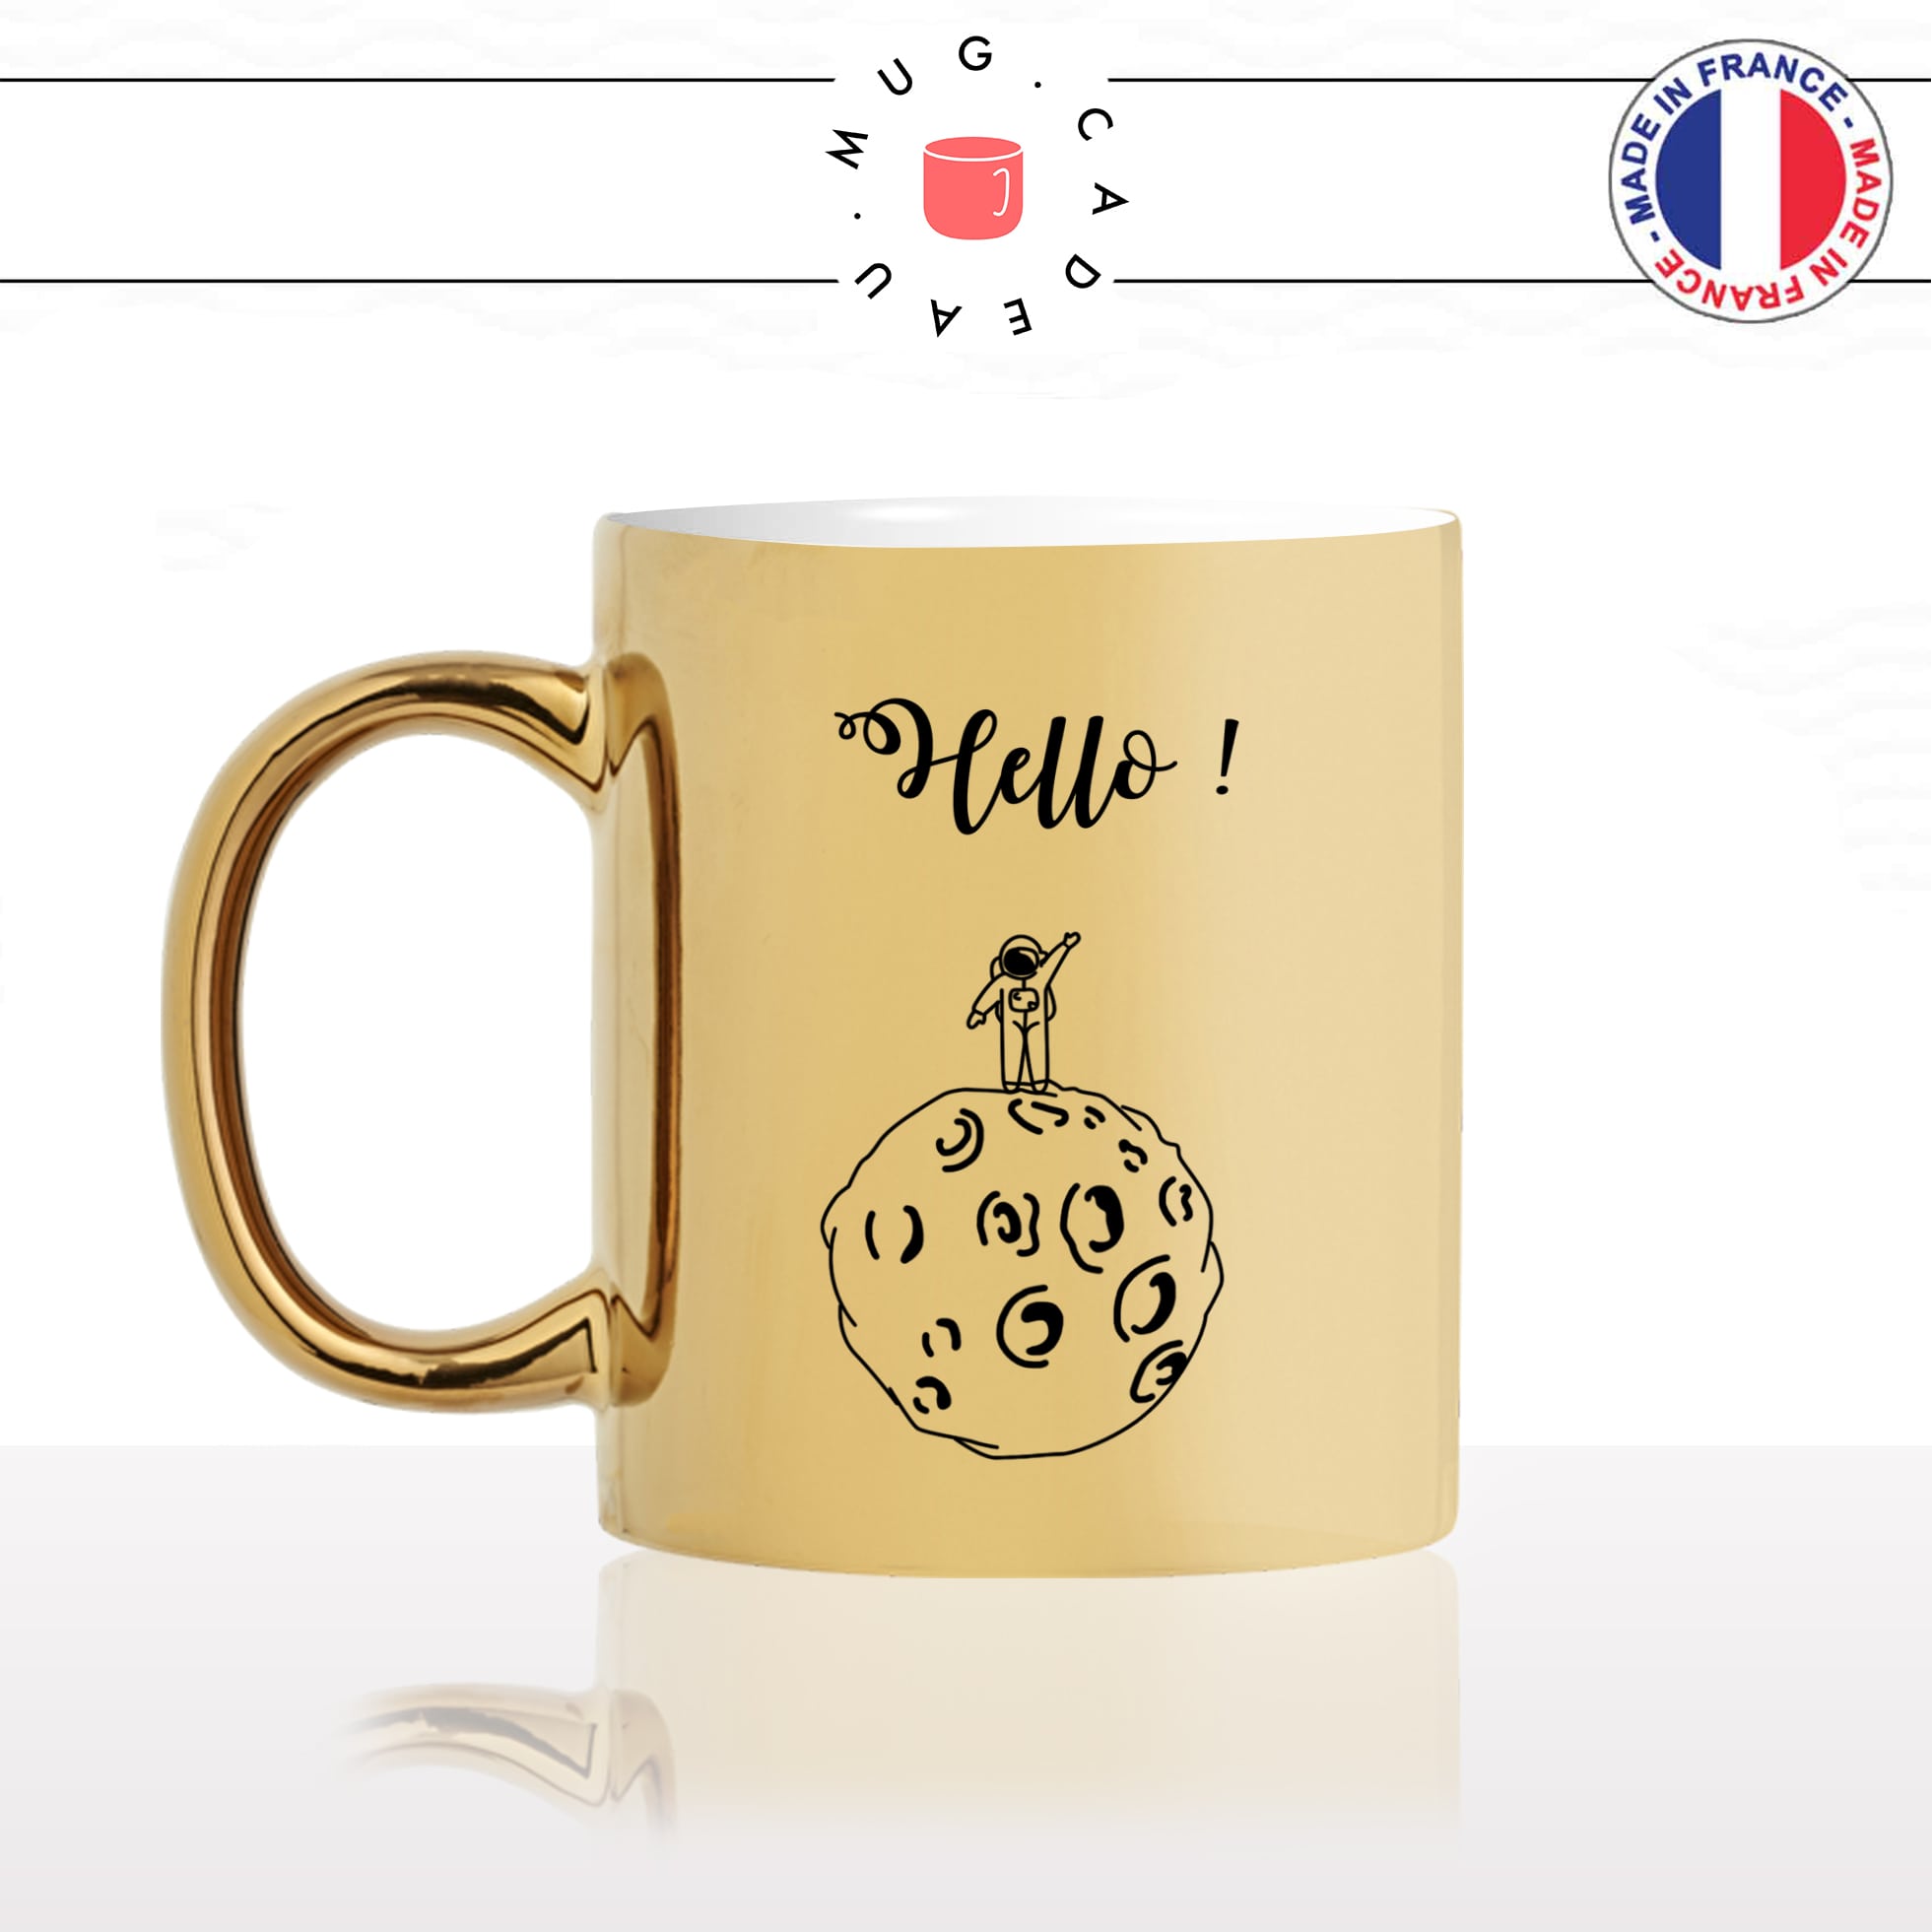 mug-tasse-or-doré-gold-espace-astronaute-hello-bonjour-lune-fusée-armstrong-nasa-cool-idée-cadeau-drole-original-fun-café-thé-personnalisé-min